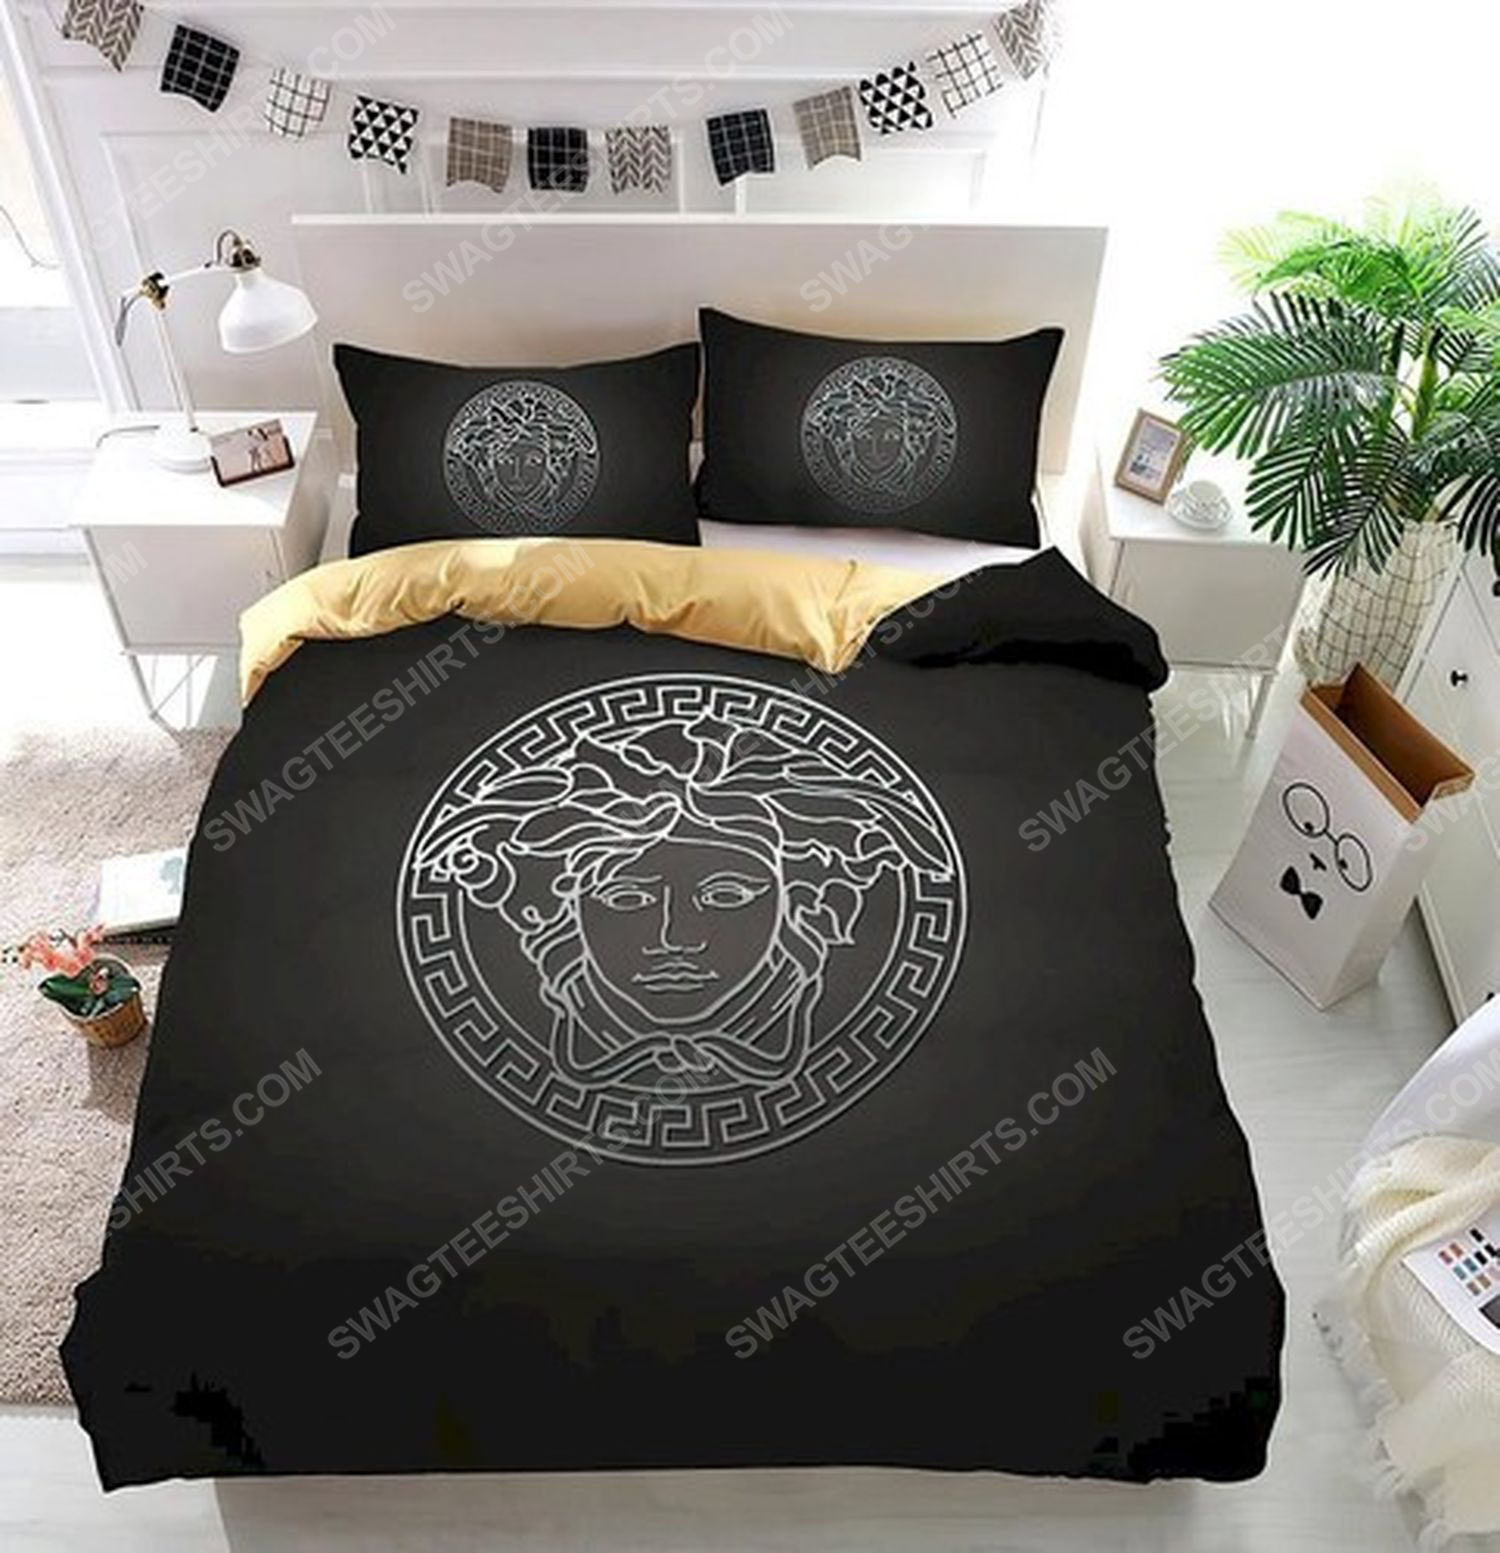 Versace home black version full print duvet cover bedding set 1